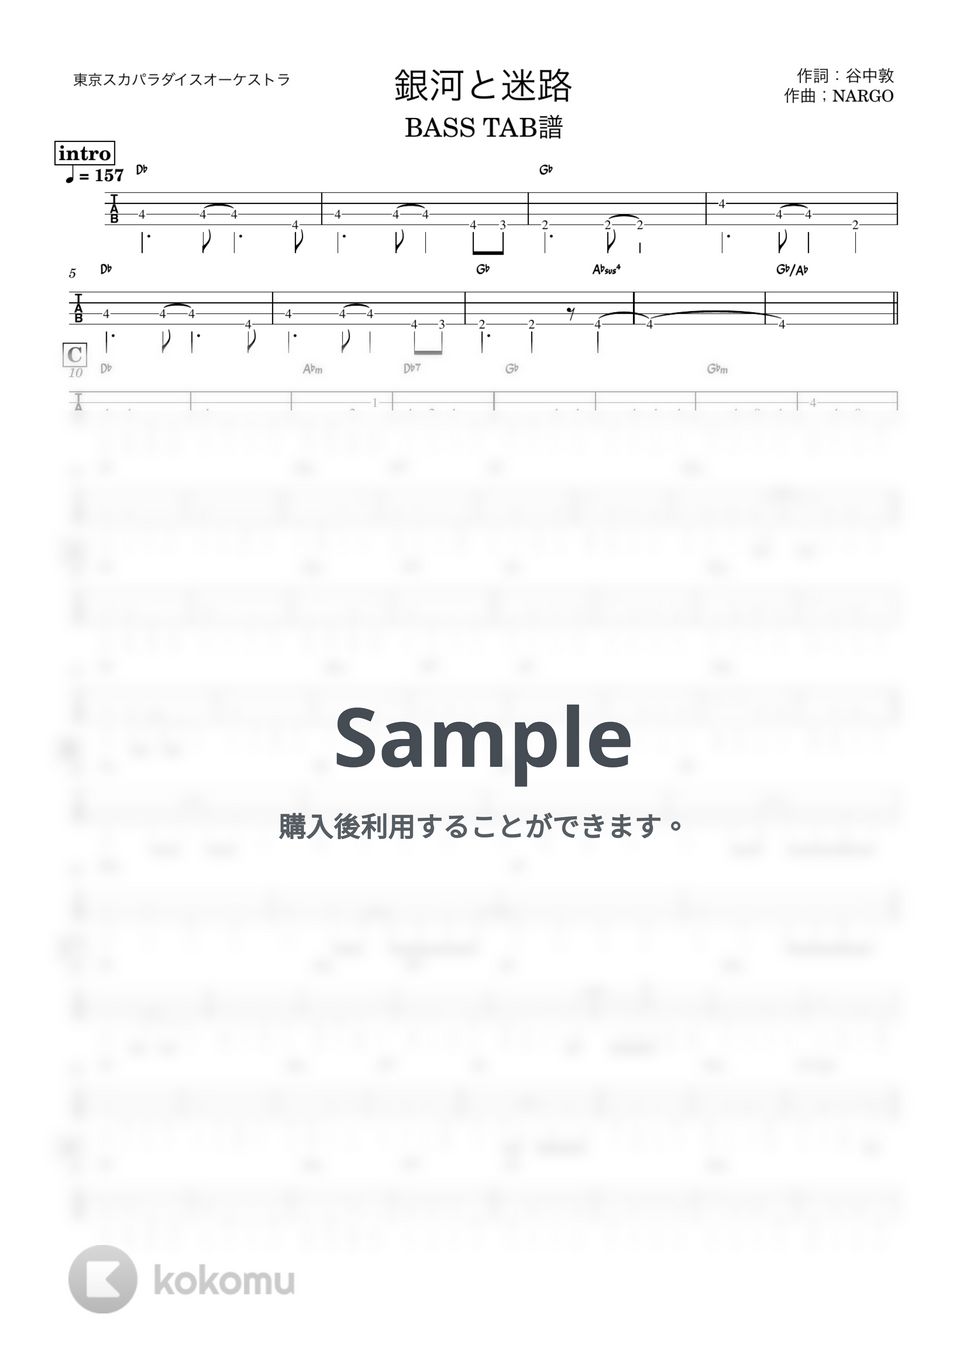 東京スカパラダイスオーケストラ - 銀河と迷路 (『ベースTAB譜』4弦ベース対応) by 箱譜屋